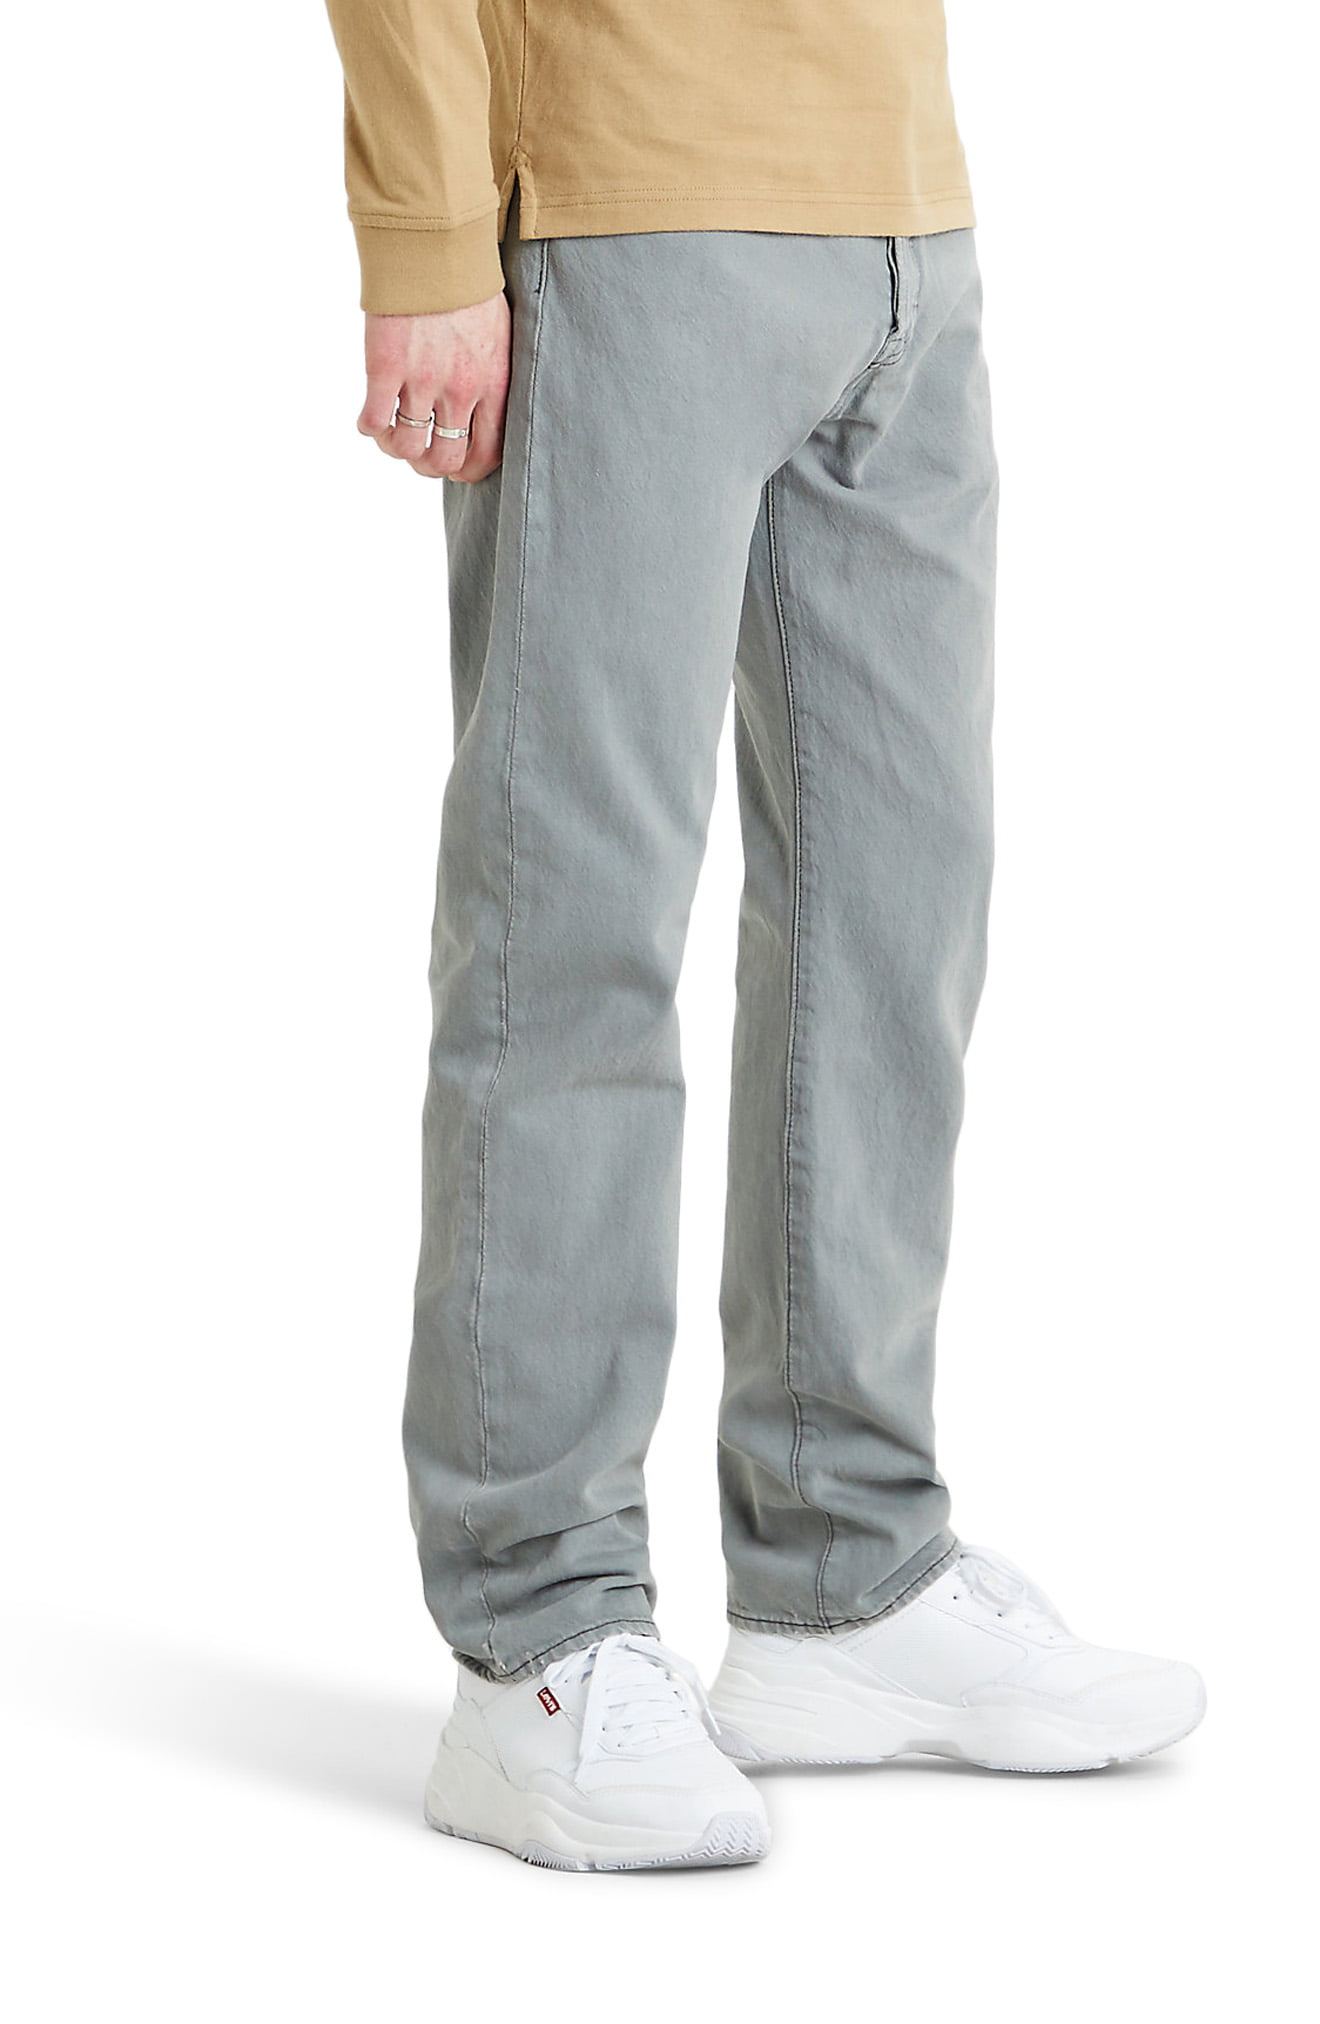 levis 501 gray jeans